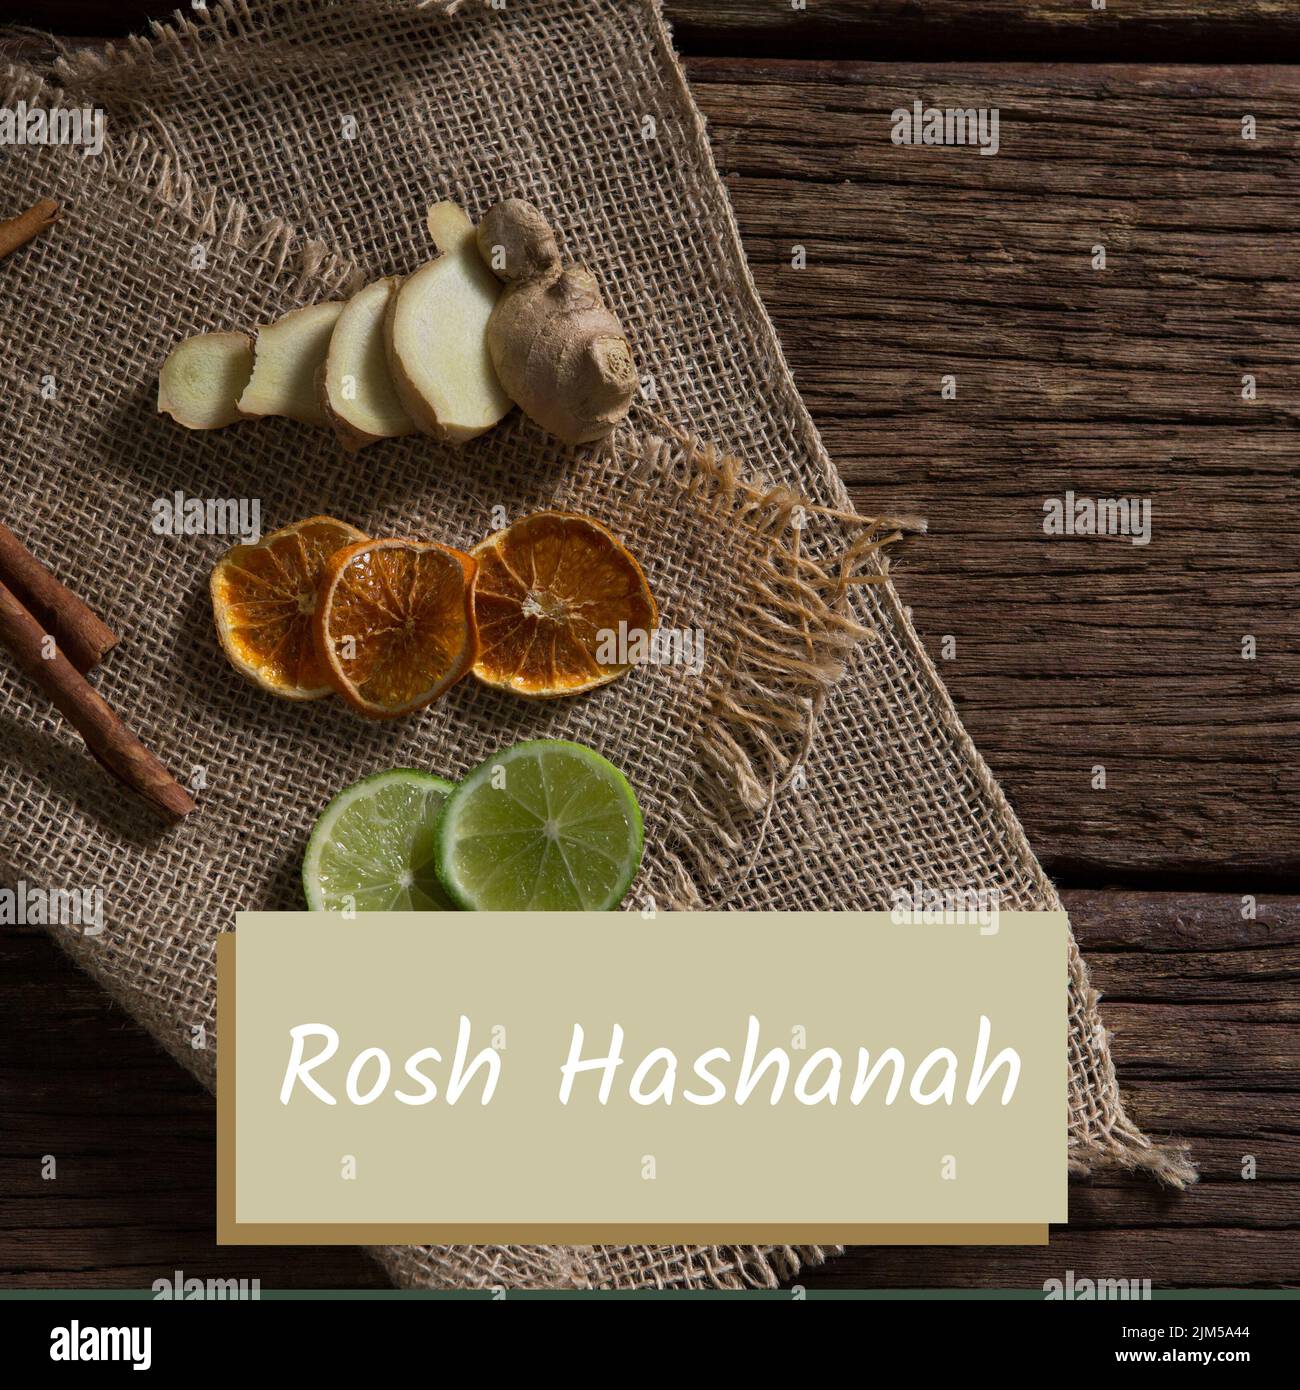 Zusammensetzung aus rosh hashanah Text mit Ingwer, Zitrone, Limettenscheiben und Zimt auf dem Tisch Stockfoto